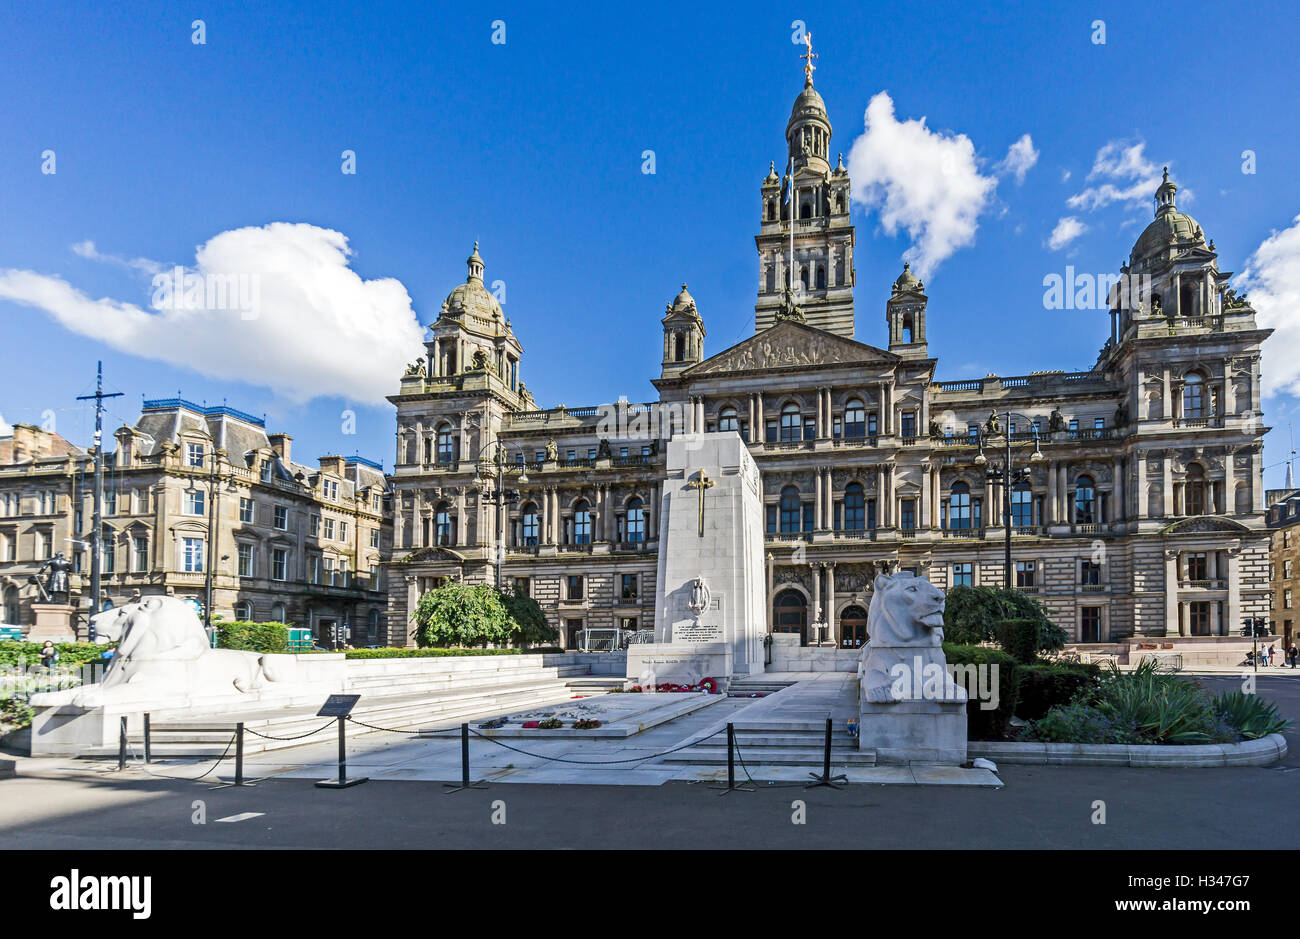 Glasgow City Chambers in George Square Glasgow Schottland mit Ehrenmal an der Vorderseite Stockfoto